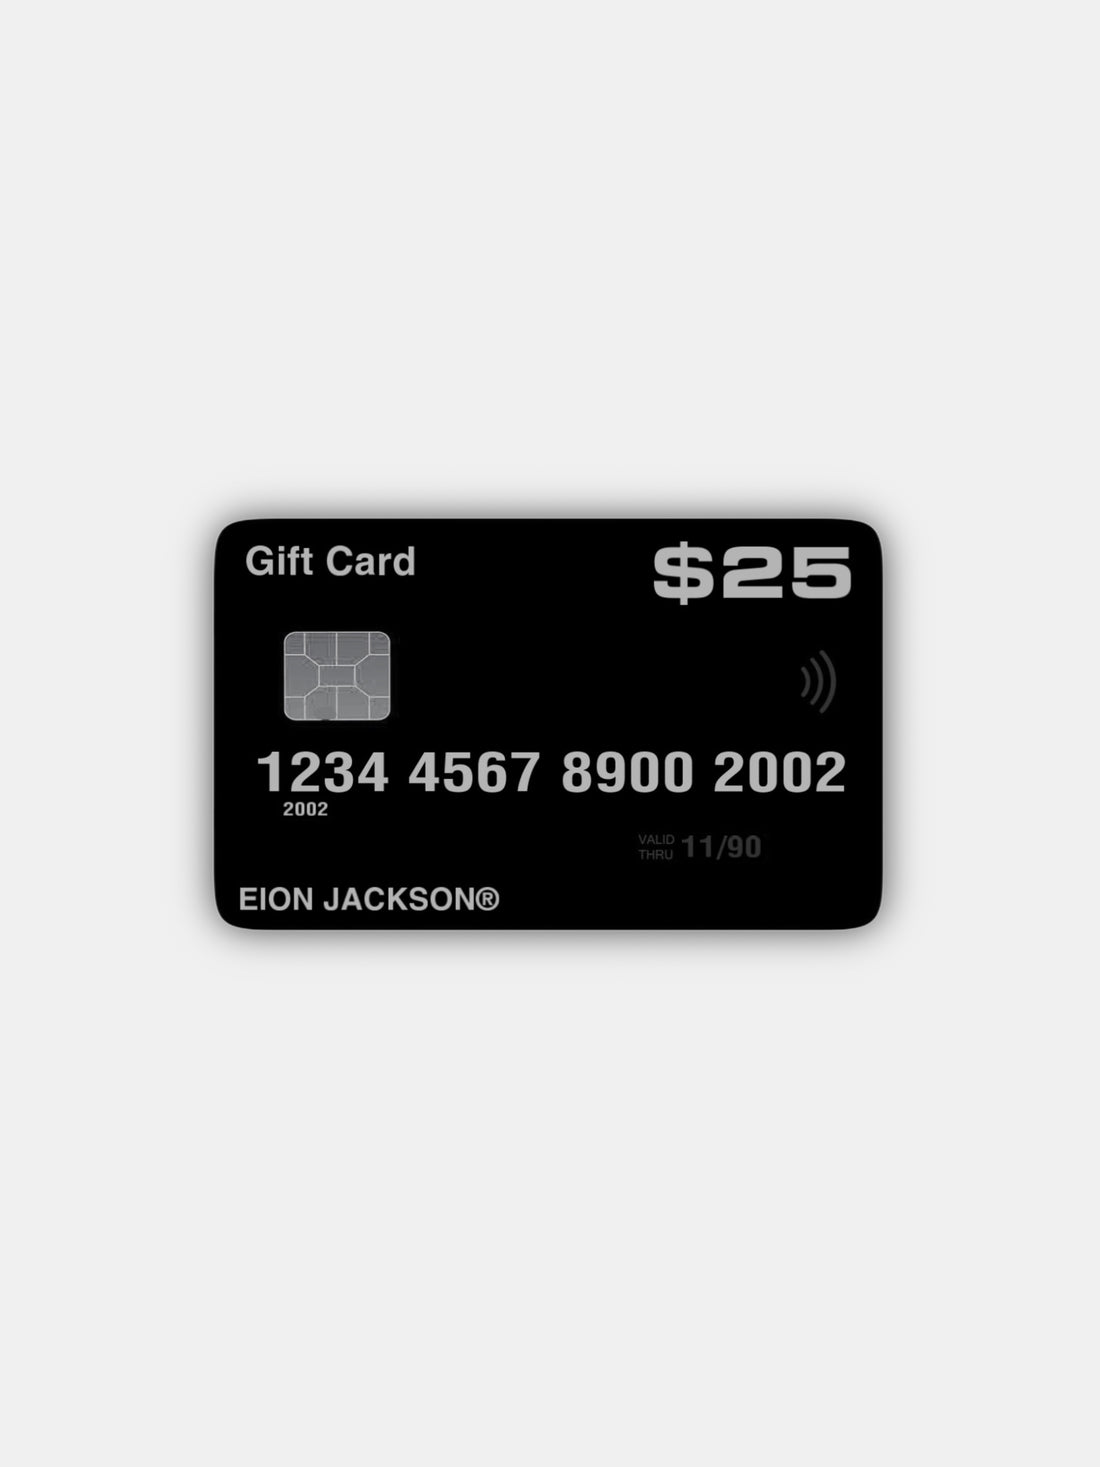 EION JACKSON® GIFT CARD